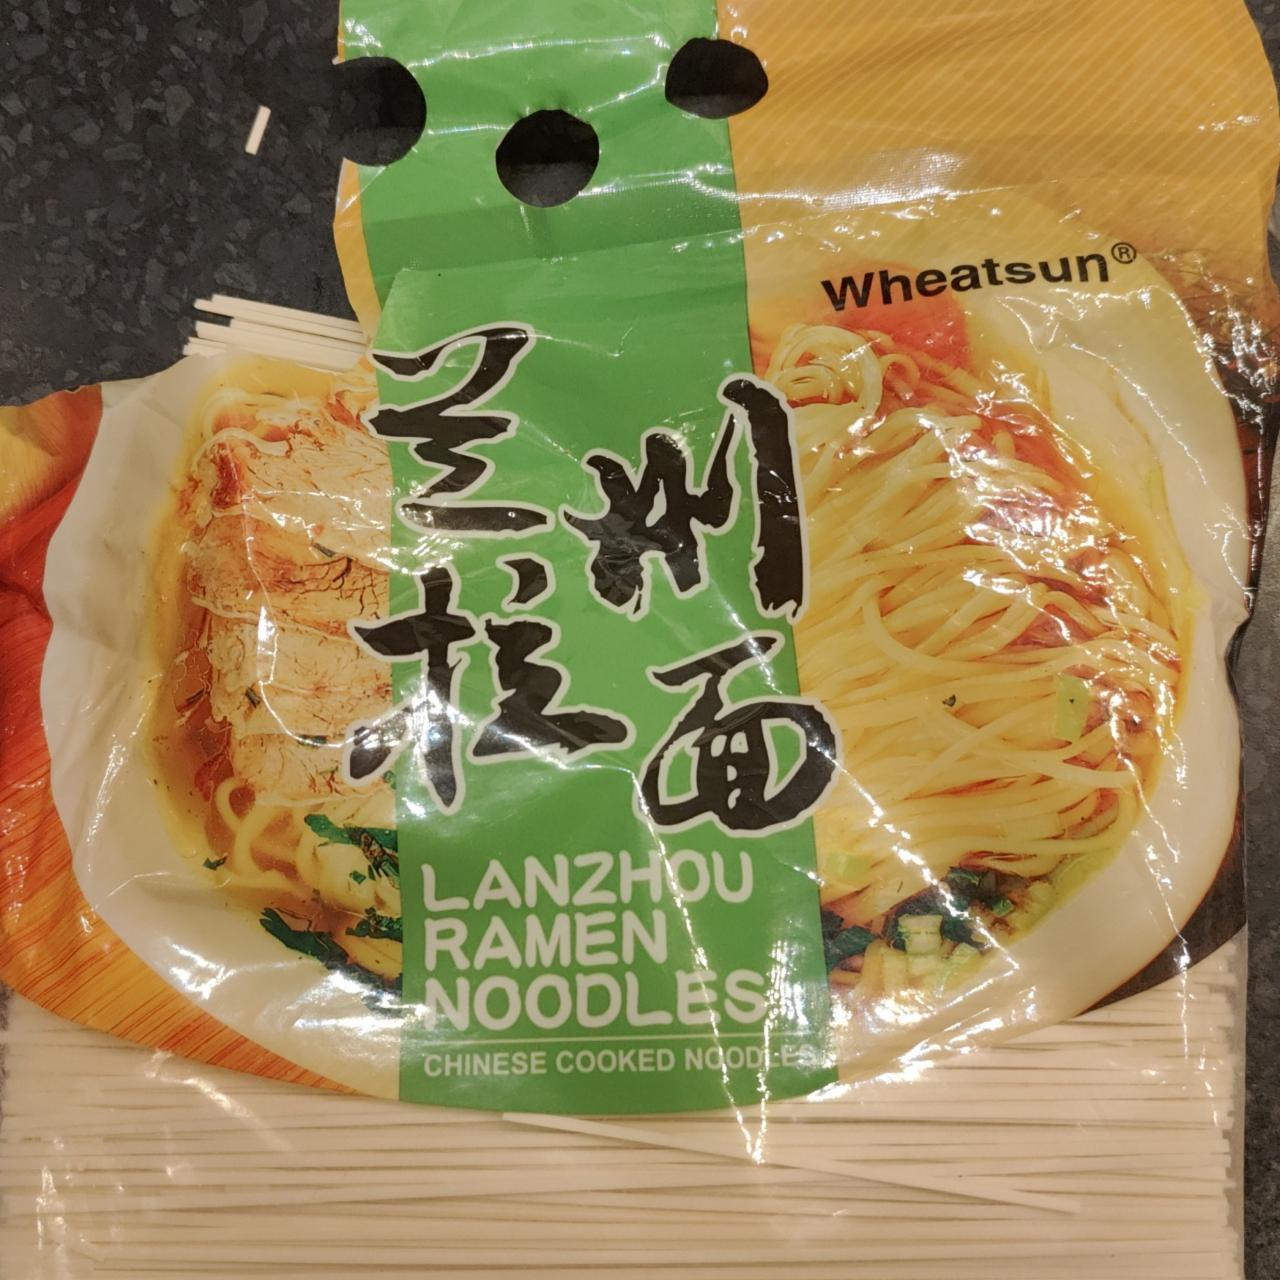 Fotografie - Lanzhou Ramen Noodles Wheatsun